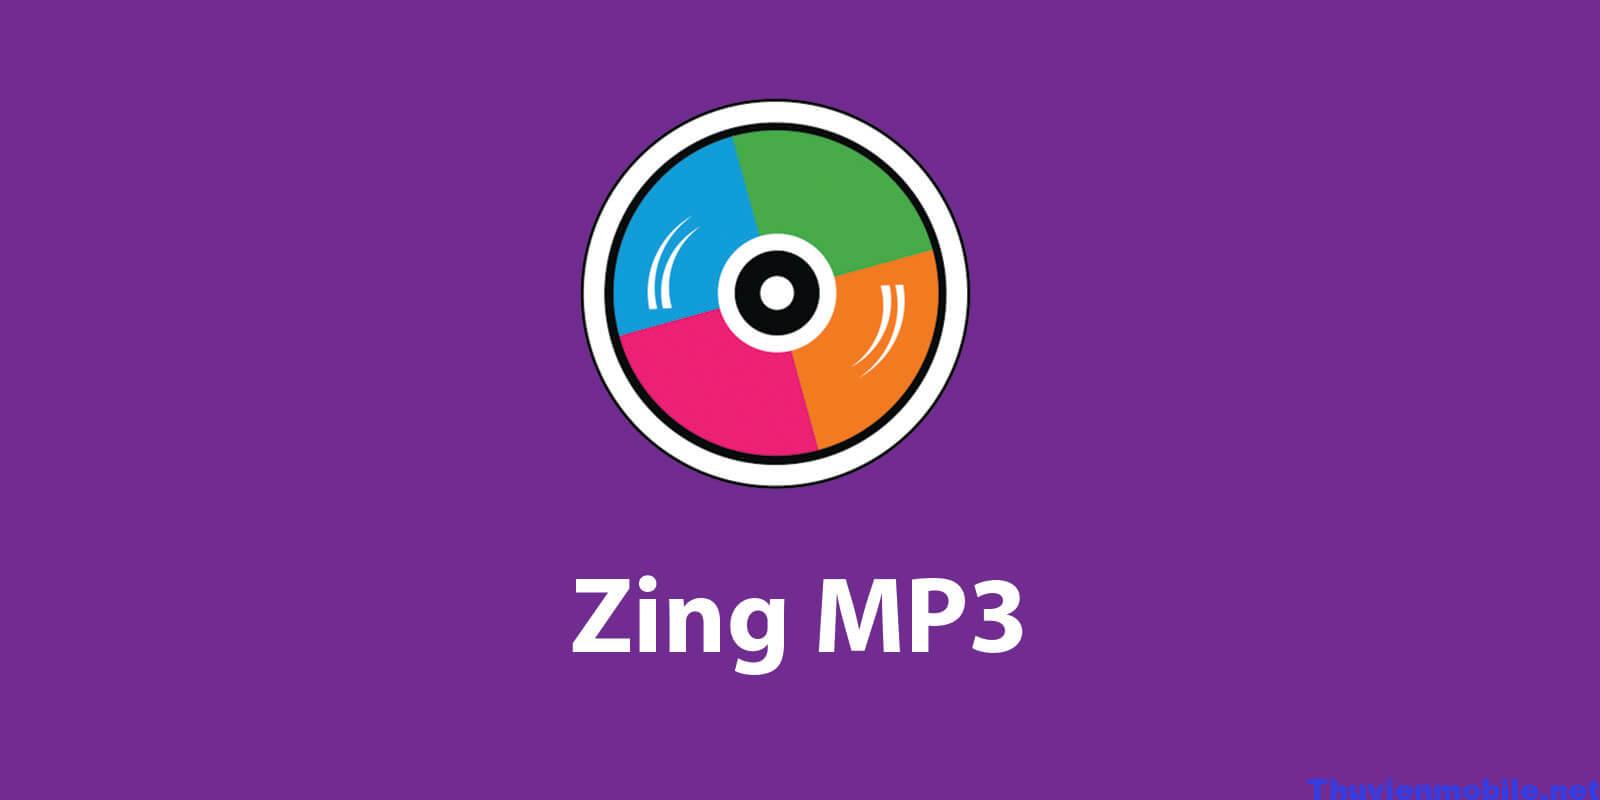 Zing MP3 